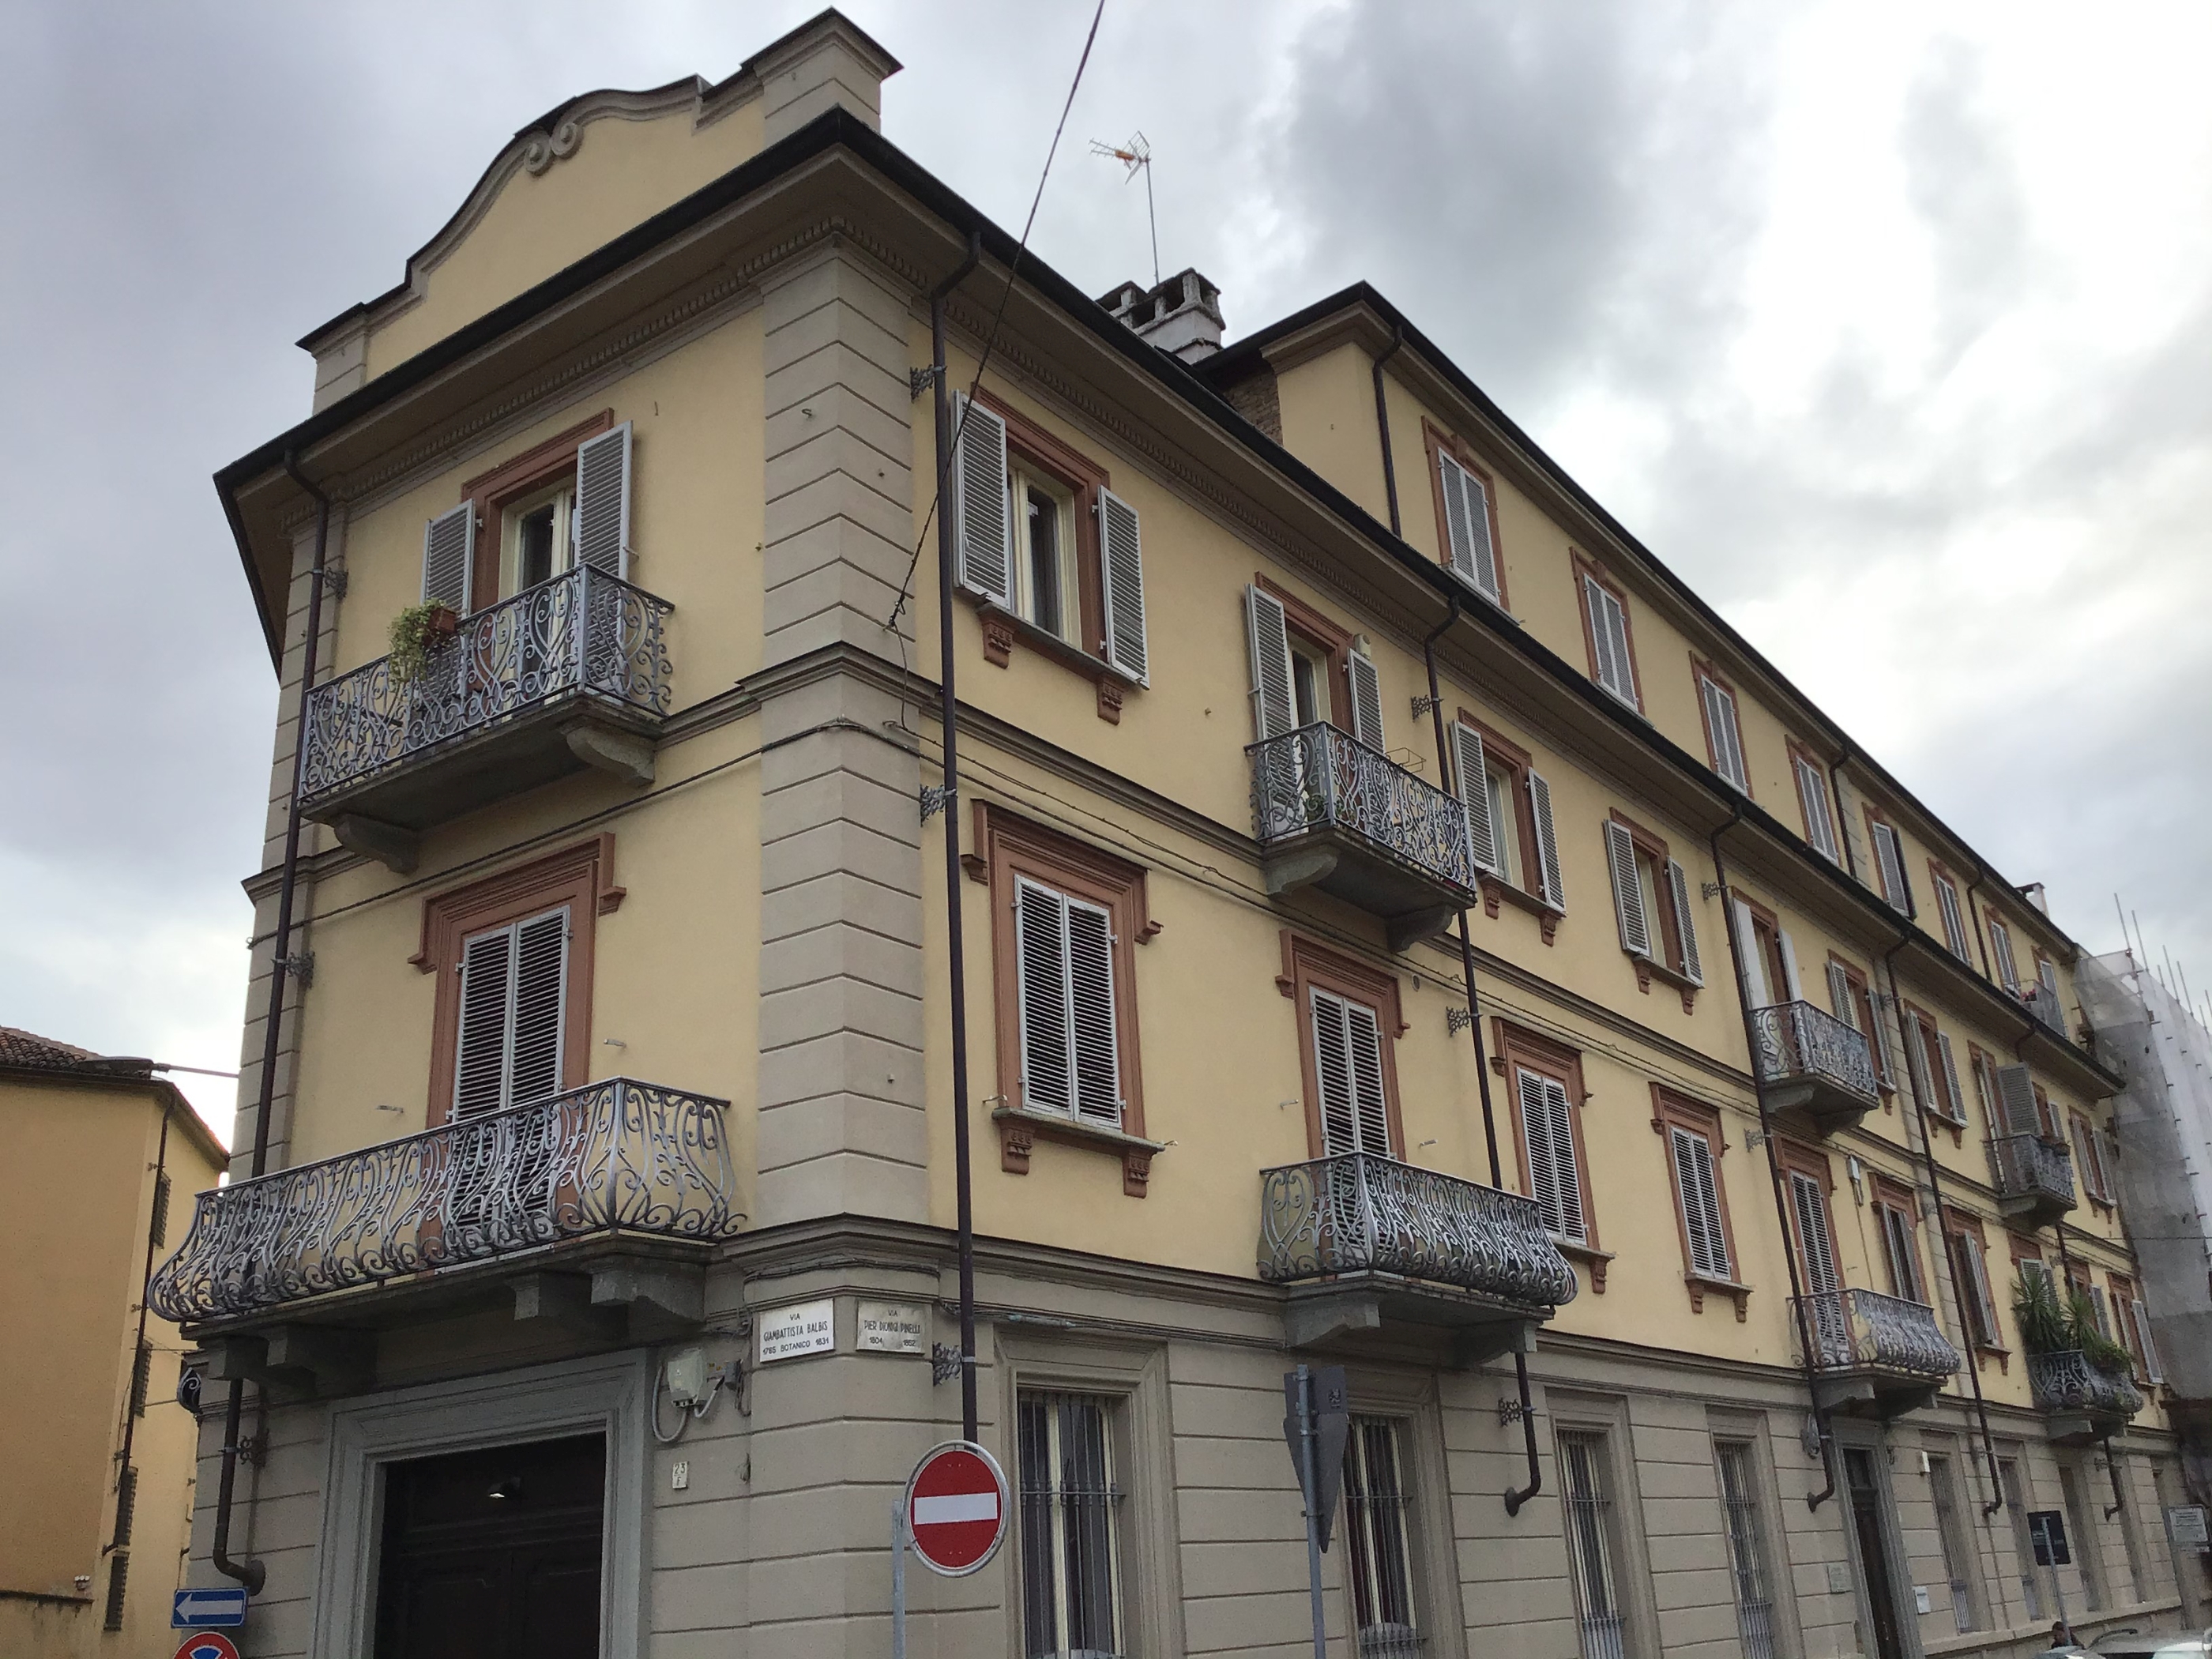 Edificio residenziale, già fabbrica di cioccolato Michele Talmone (casa, privata) - Torino (TO)  (XX; XX)